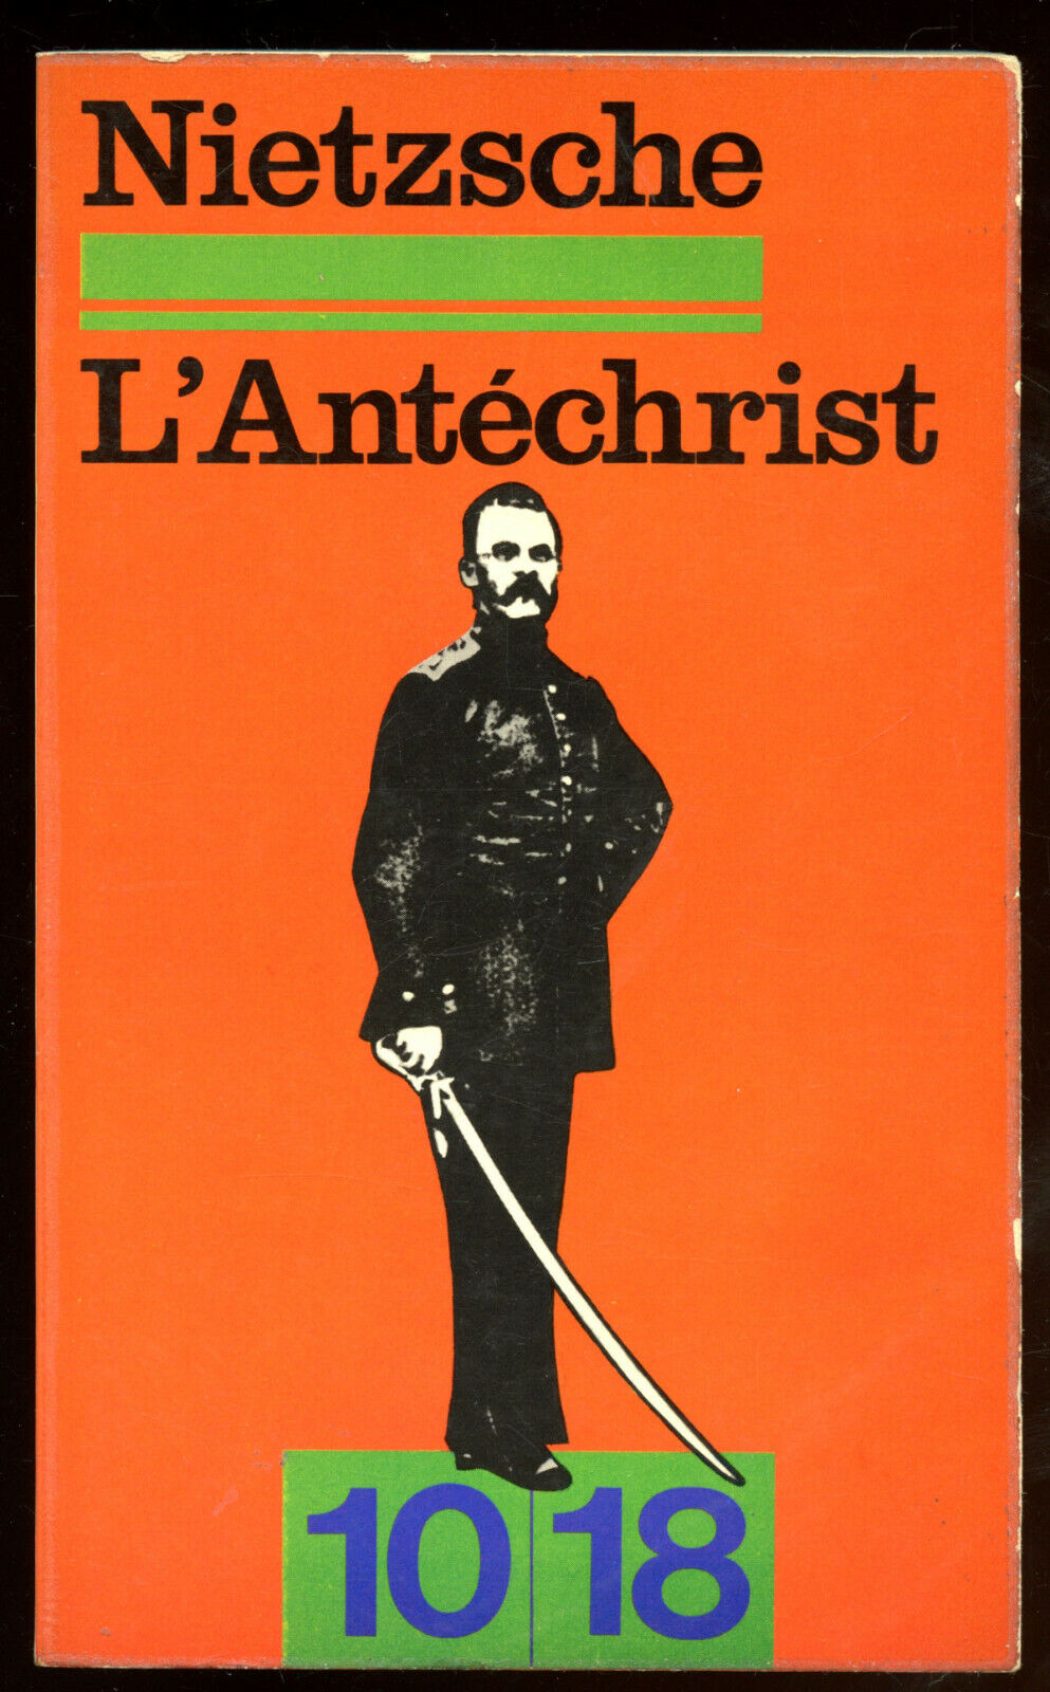 L’euthanasisme, une idéologie issue de Nietzsche, exprimée dans “L’Antéchrist”